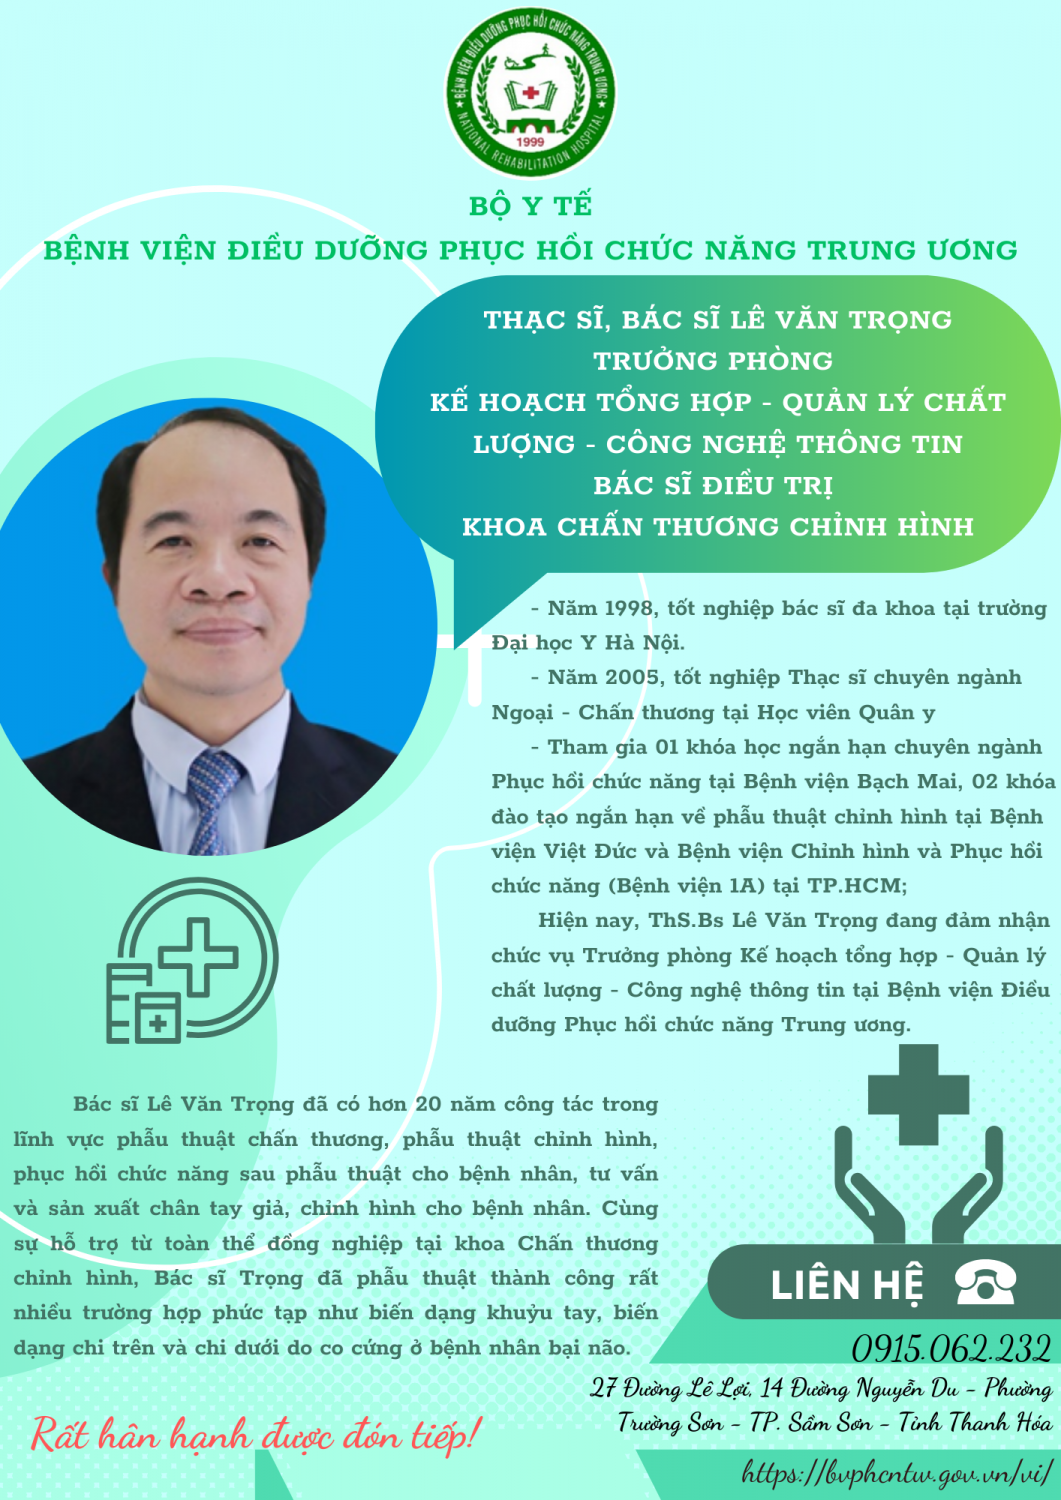 Dr Le Van Trong (2)